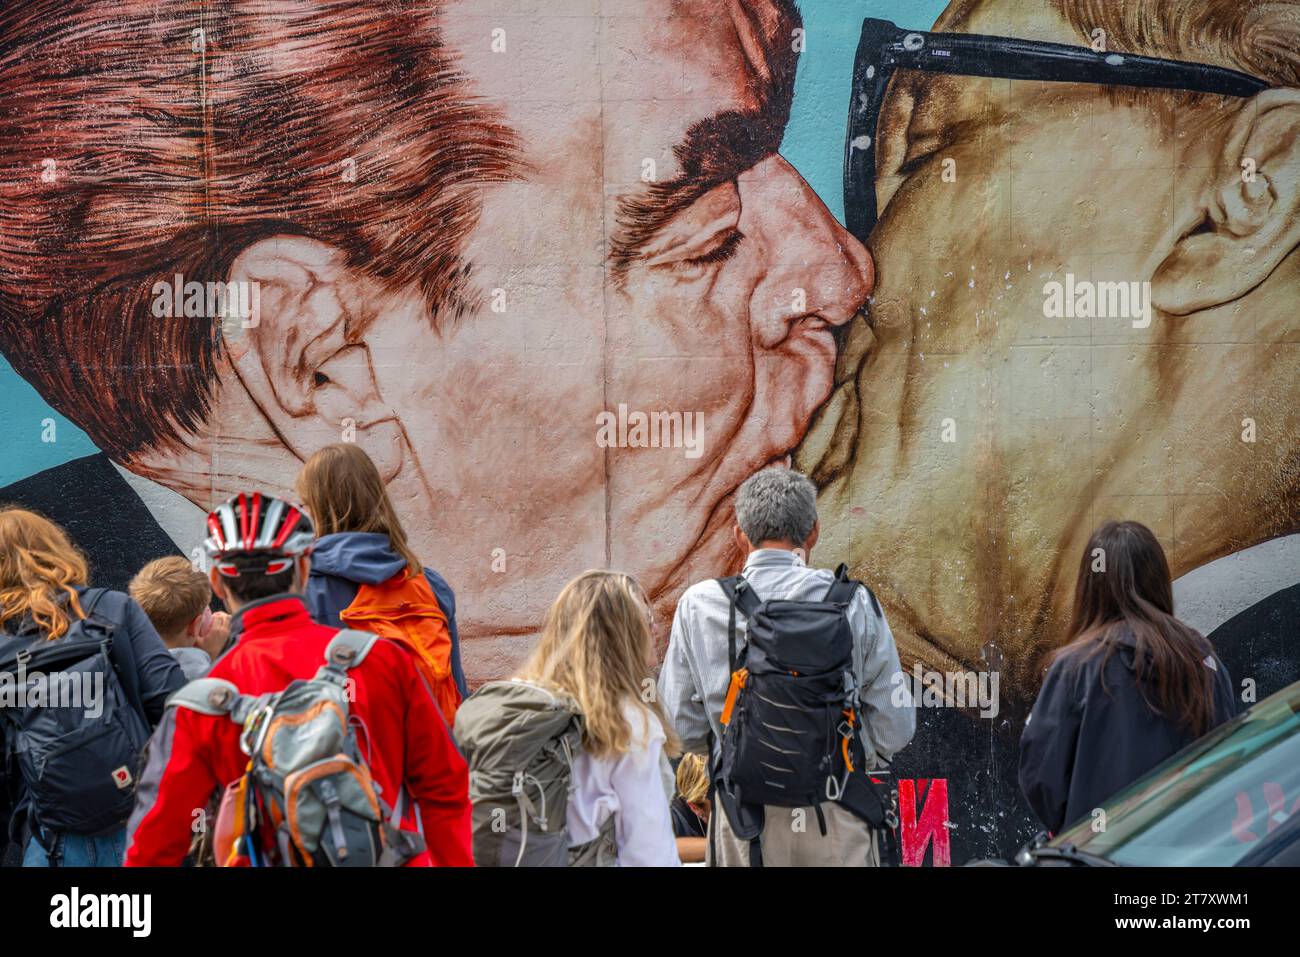 Vue d'œuvres d'art au Berliner Mauer, section est de l'ancien mur de Berlin le long de la rivière Spree, Berlin, Allemagne, Europe Banque D'Images